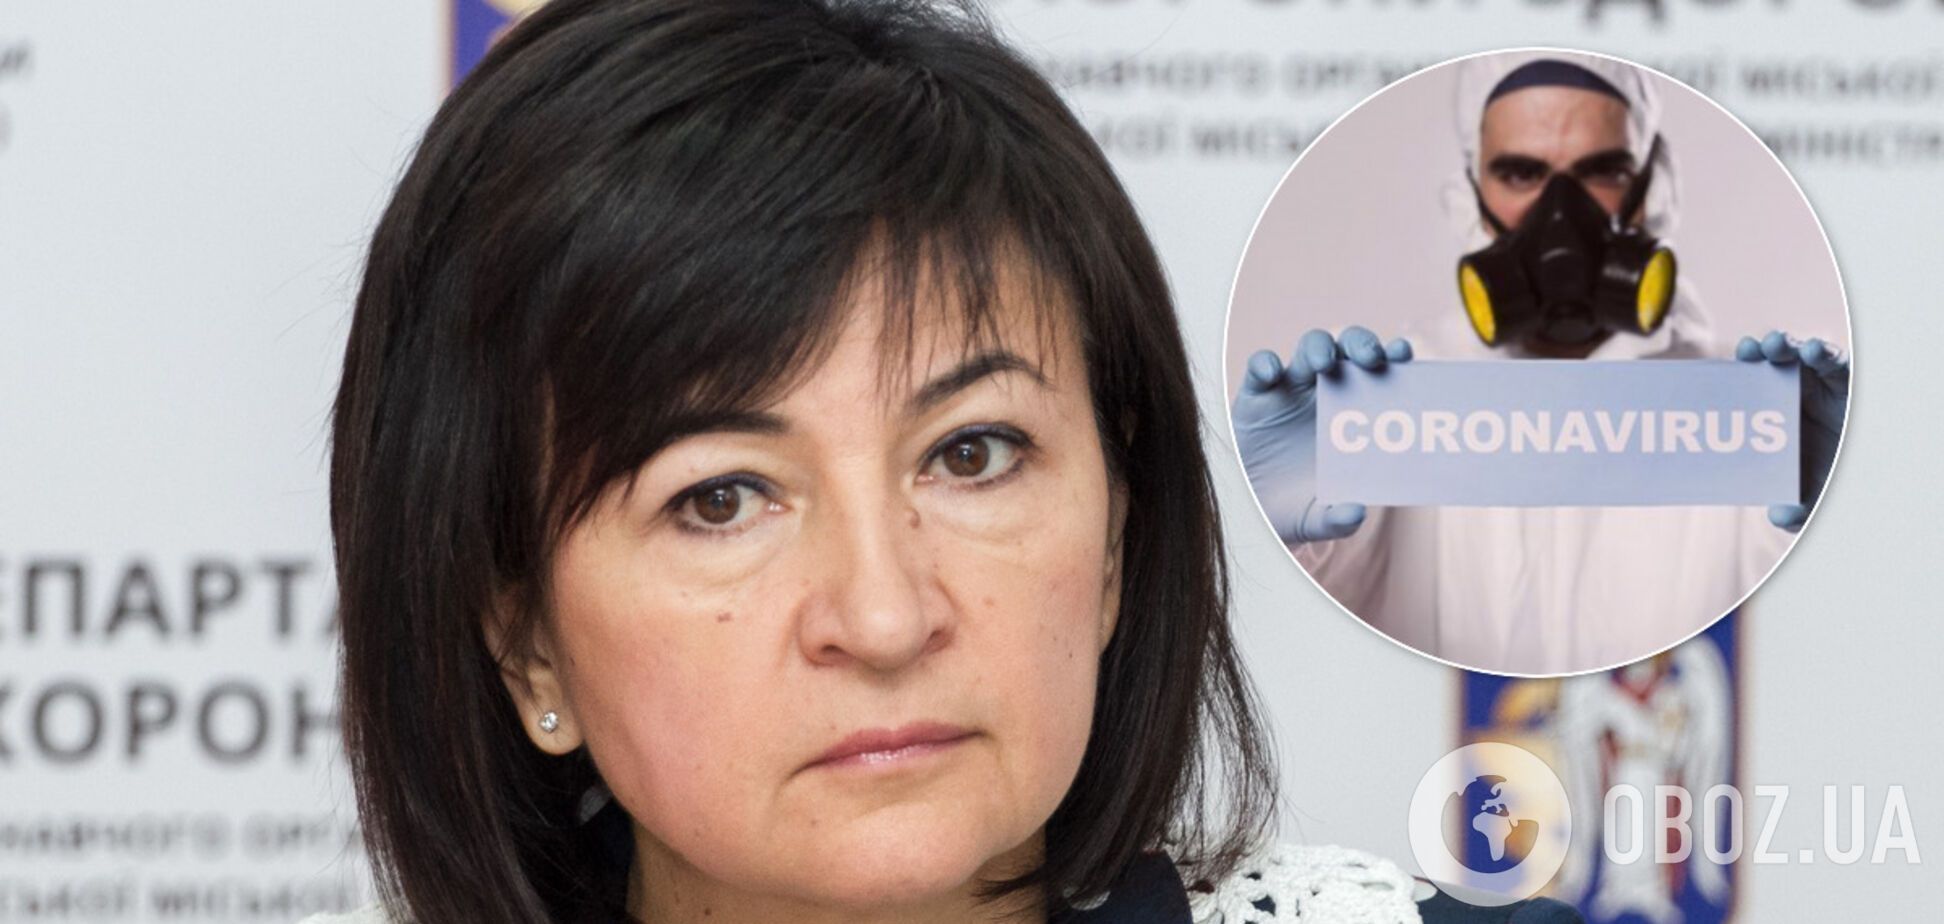 Глава департаменту охорони здоров'я Києва відмовилася від самоізоляції через коронавірус